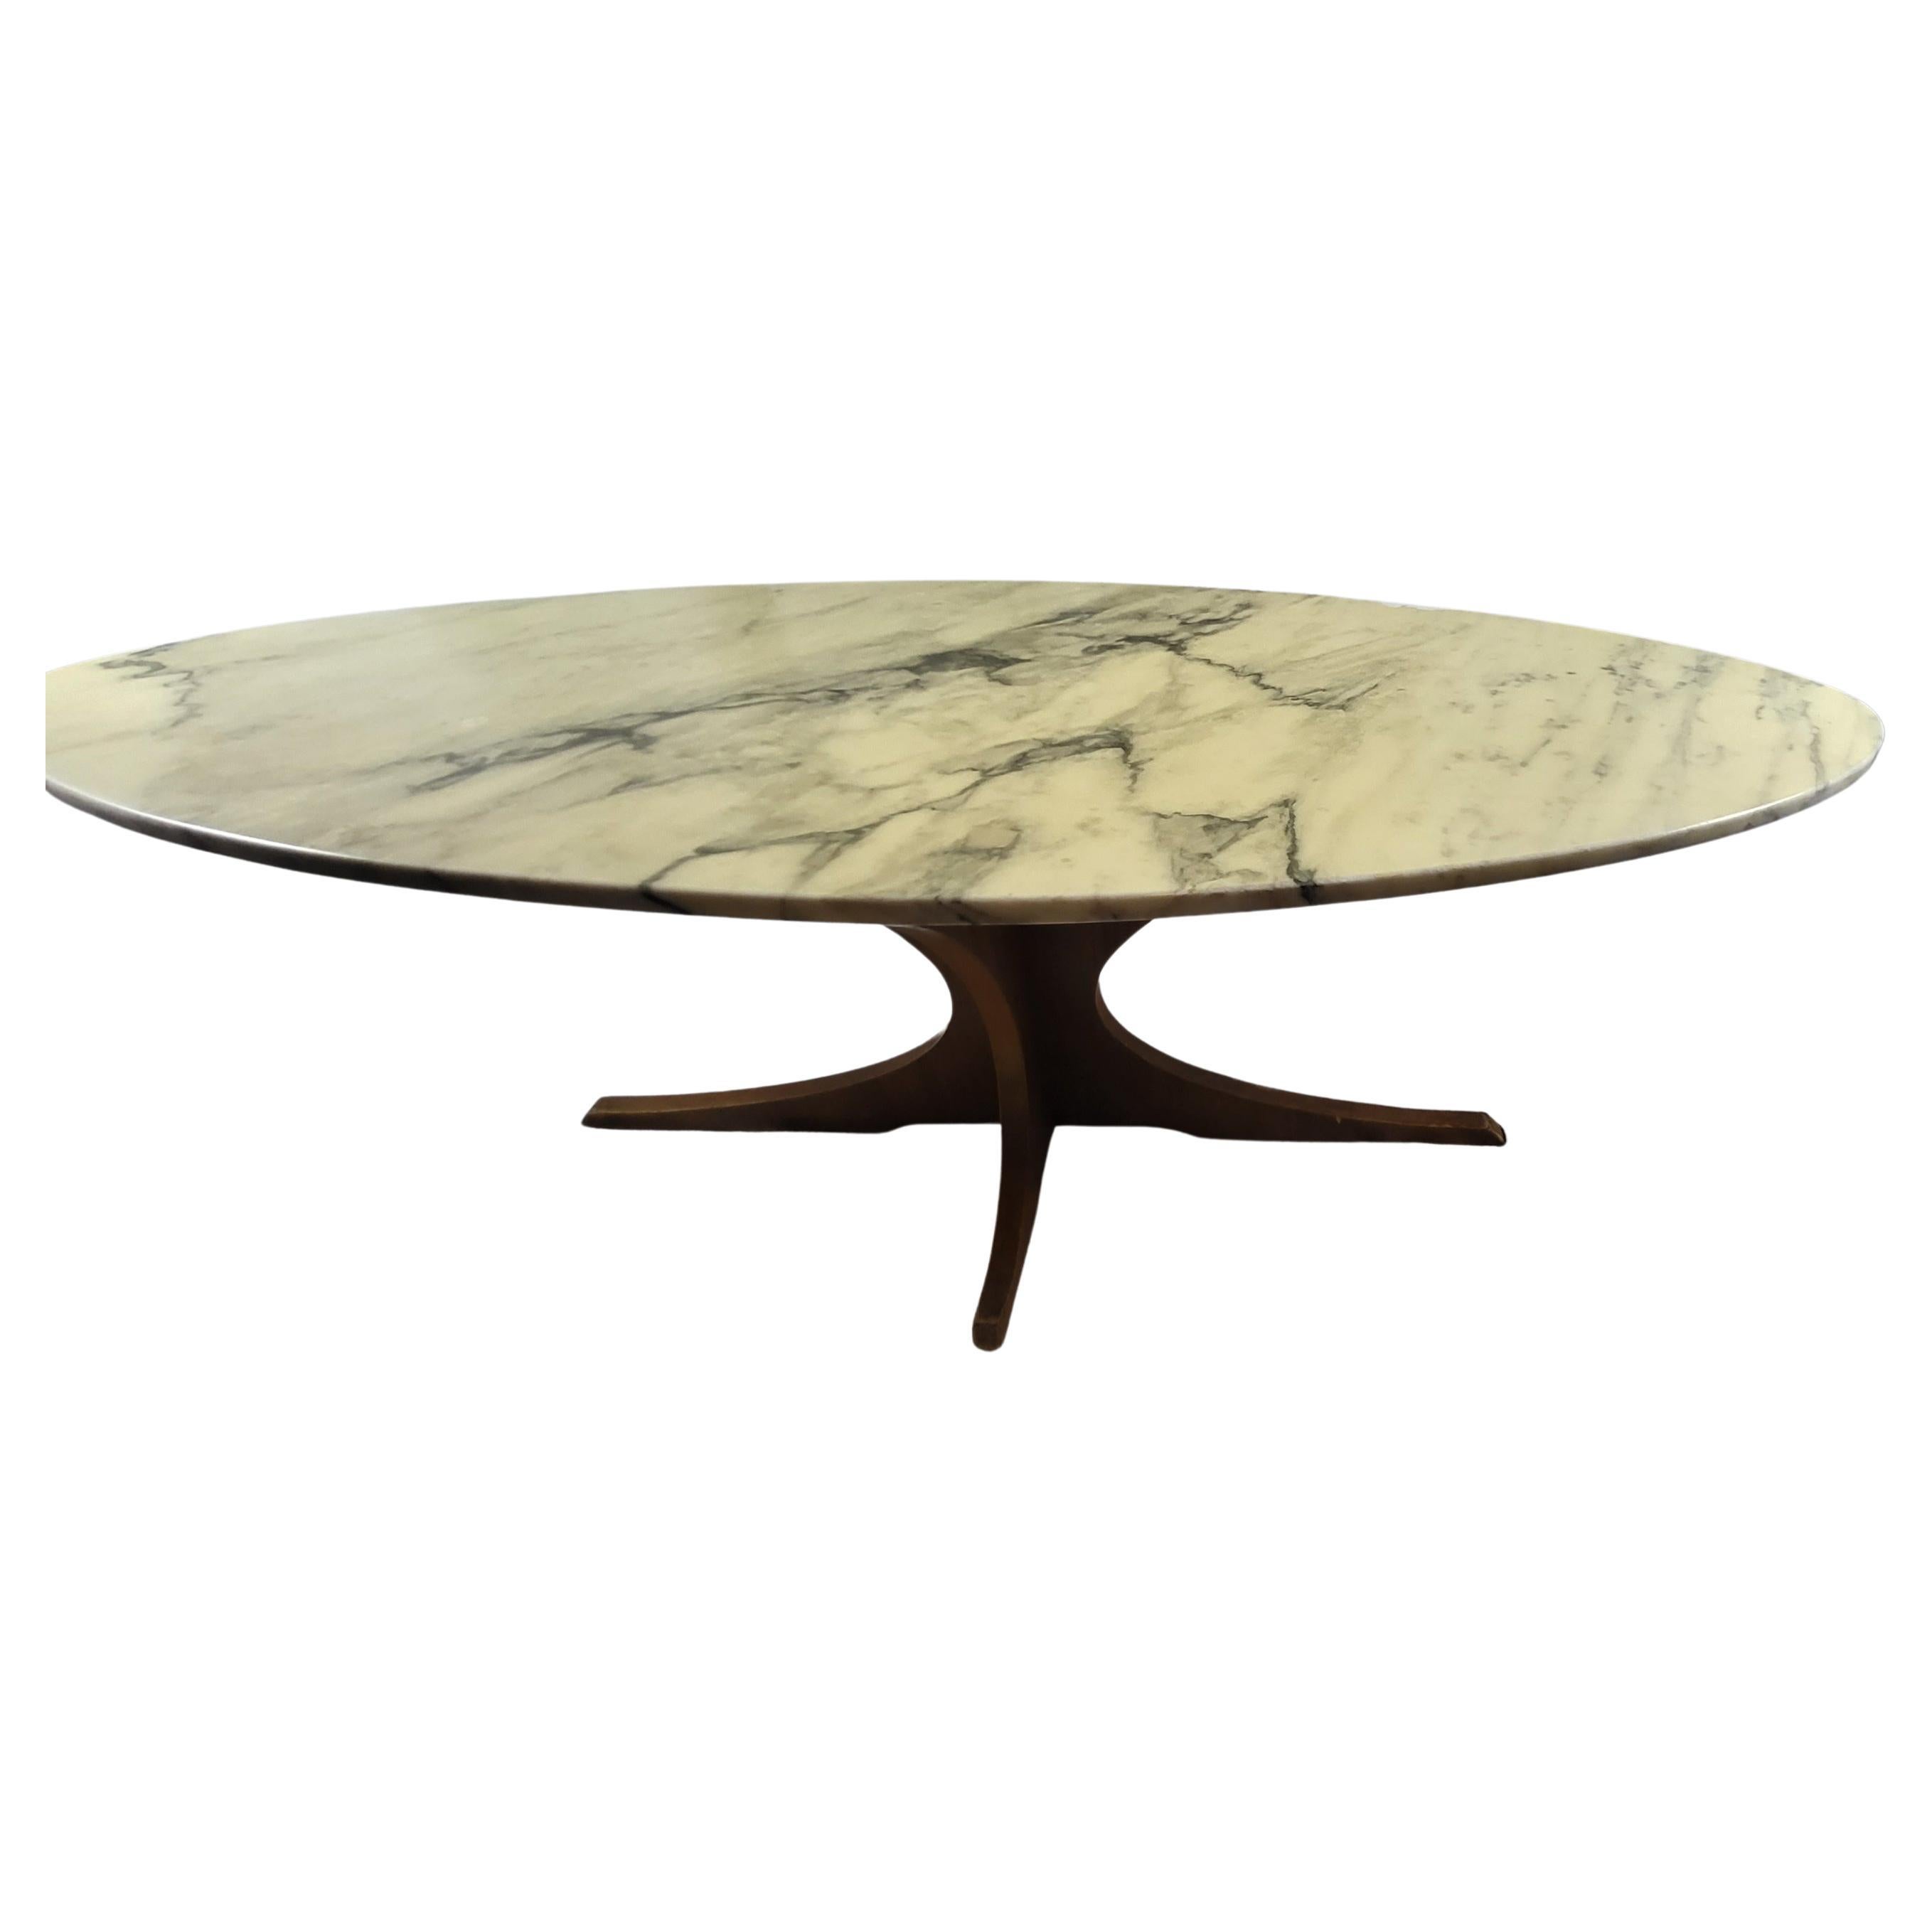 Table basse vintage 1960, avec plateau  ovale, forme planche de surf, en marbre veiné, amovible, piétement croisé en bois massif.
Le vernis pour protéger le marbre est usé sur le coté (voir la photo) il suffit d'enlever ce vernis pour voir